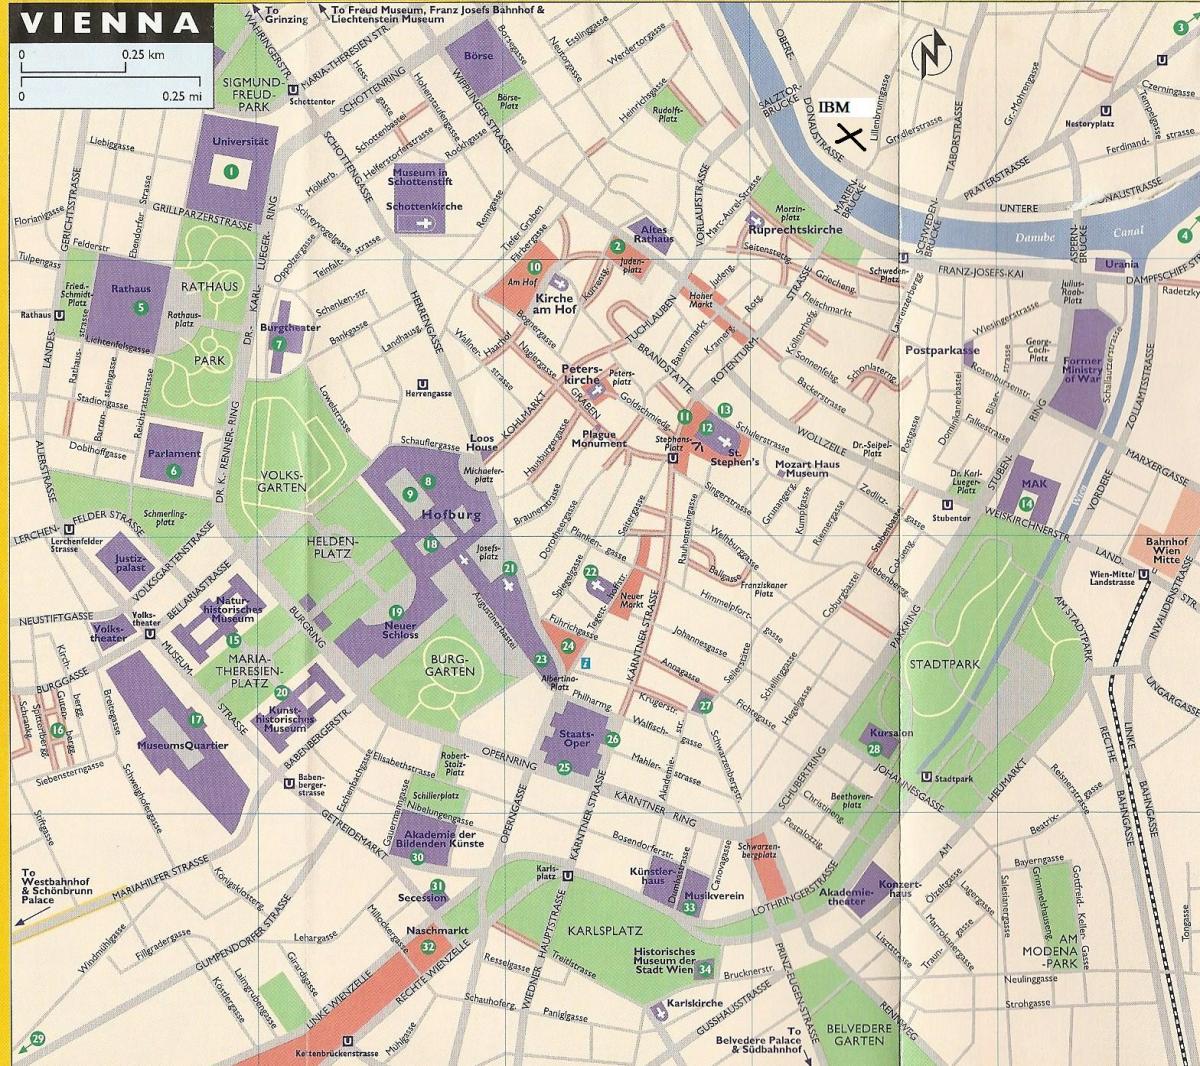 نقشه از فروشگاه های بزرگ در وین 